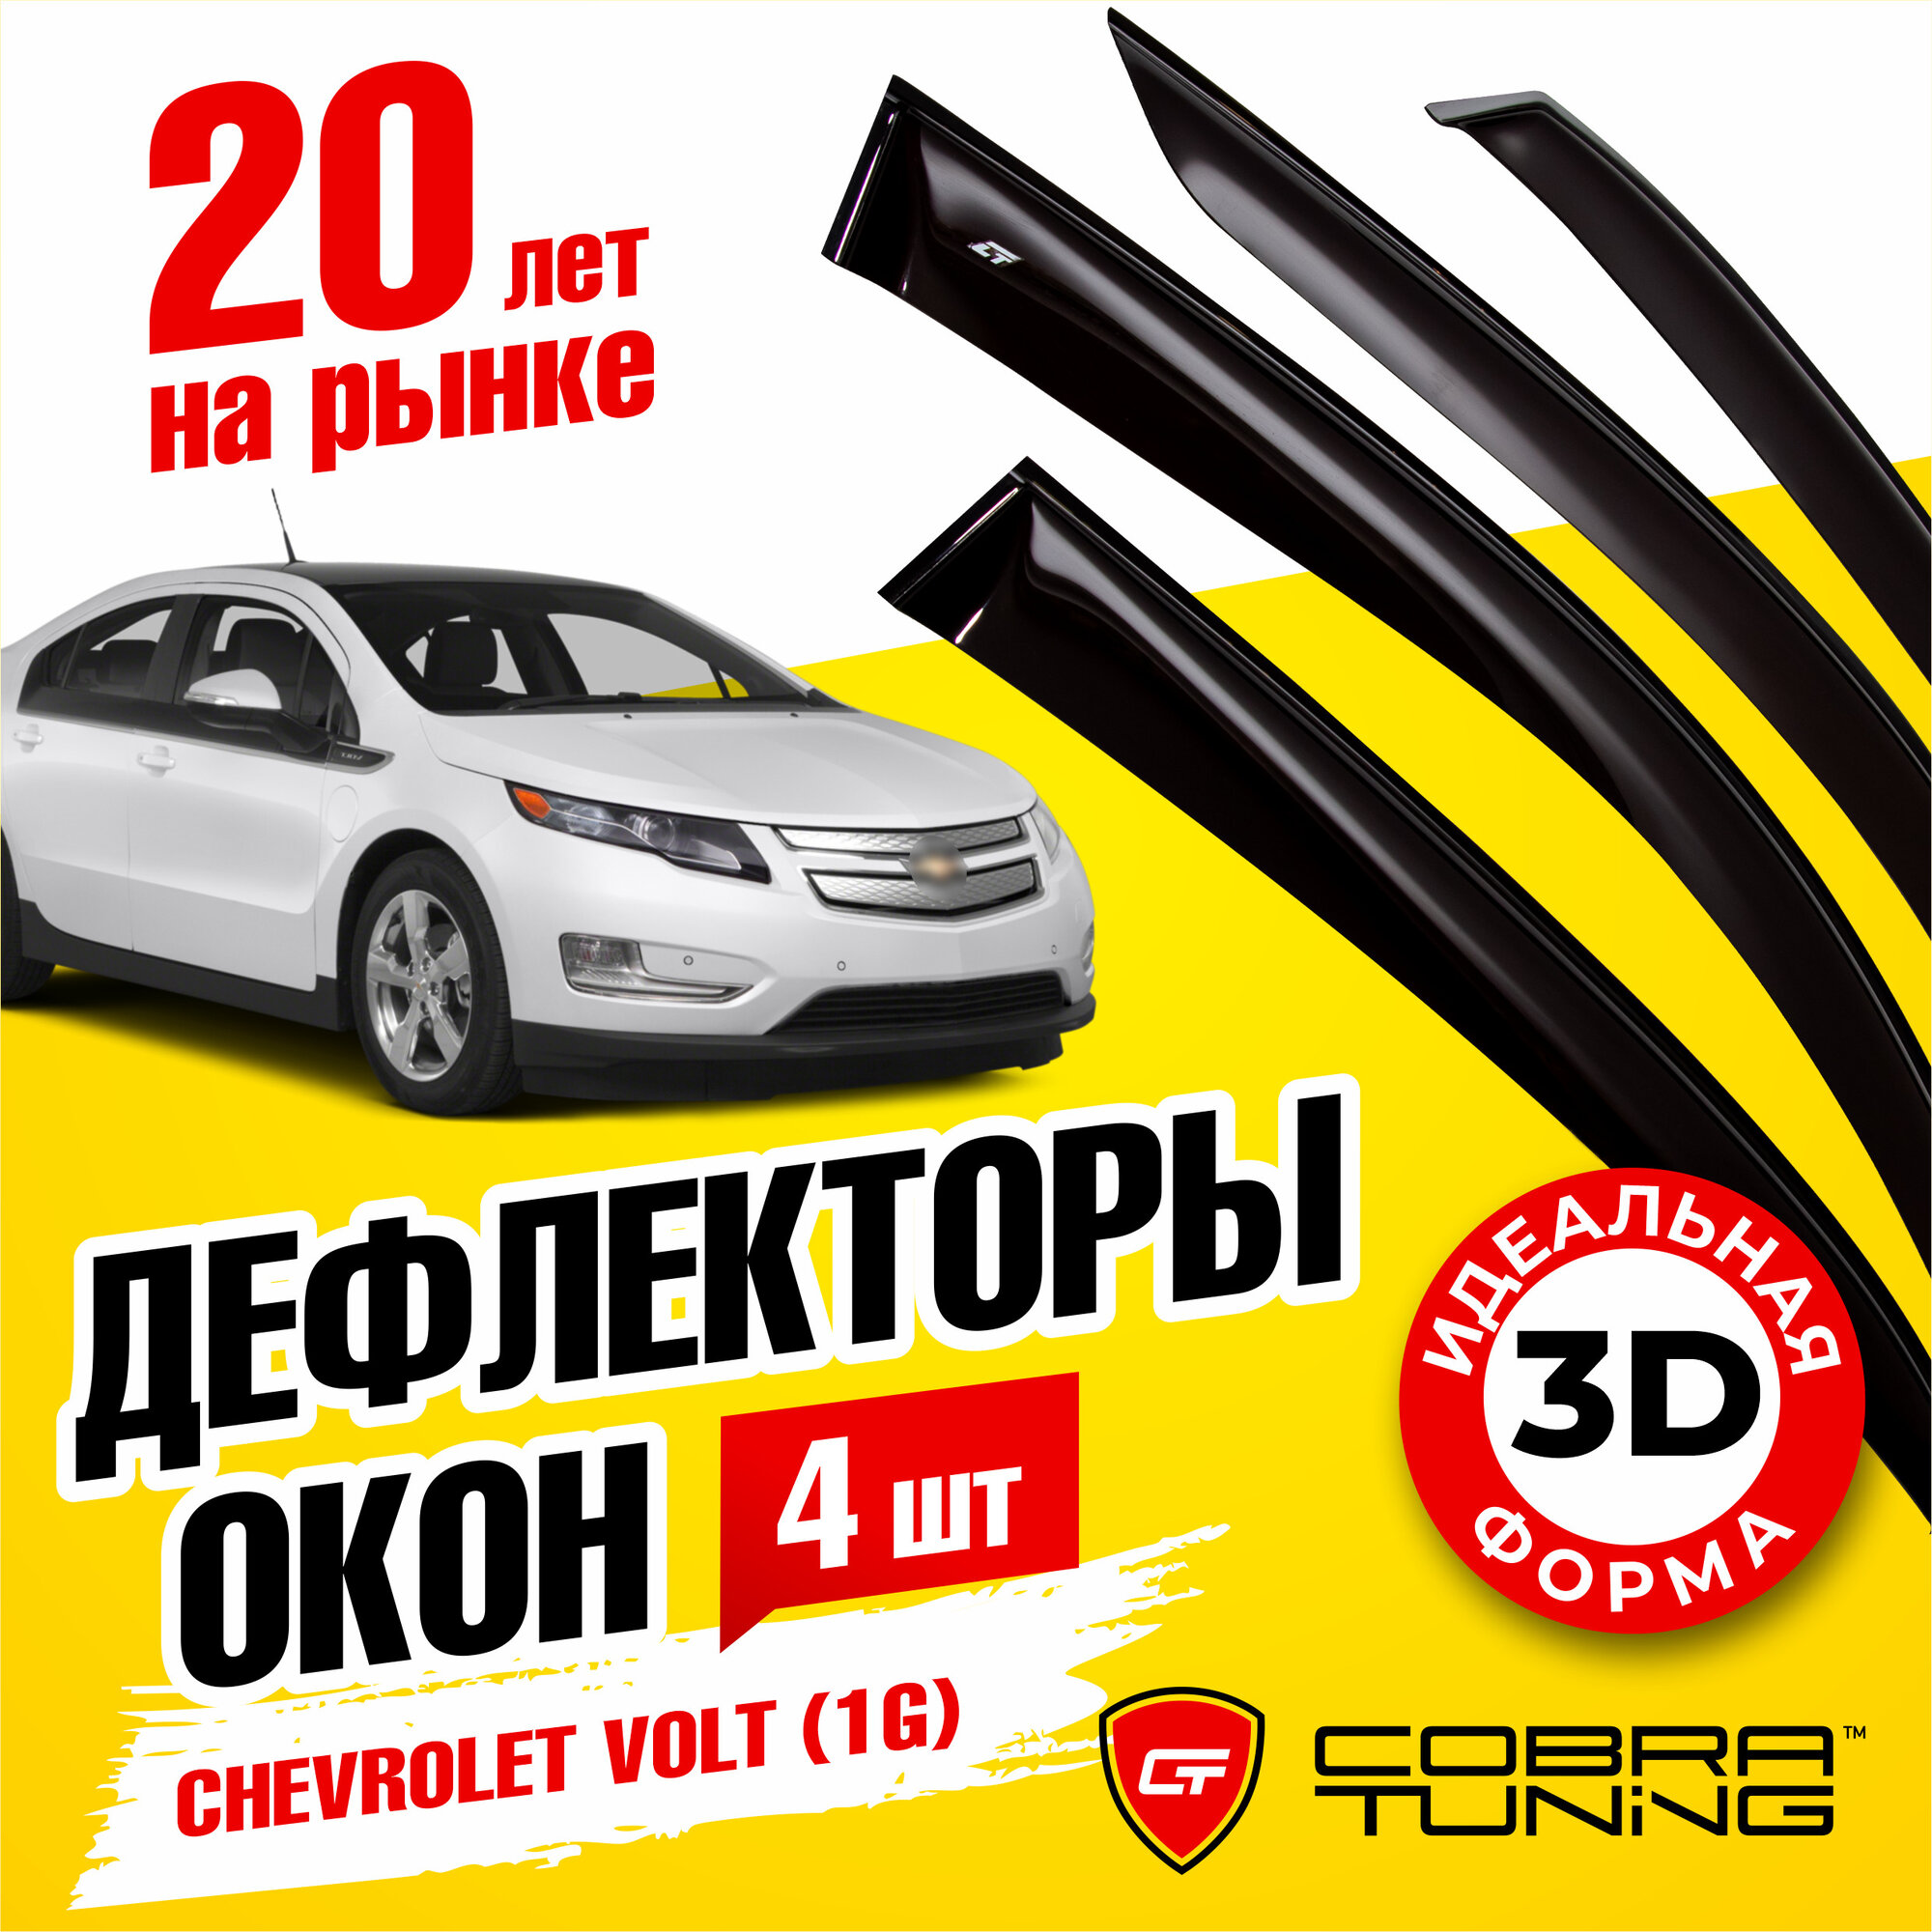 Дефлекторы боковых окон для Chevrolet Volt (Шевроле Вольт) (1G) 2010-2015, ветровики на двери автомобиля, Cobra Tuning